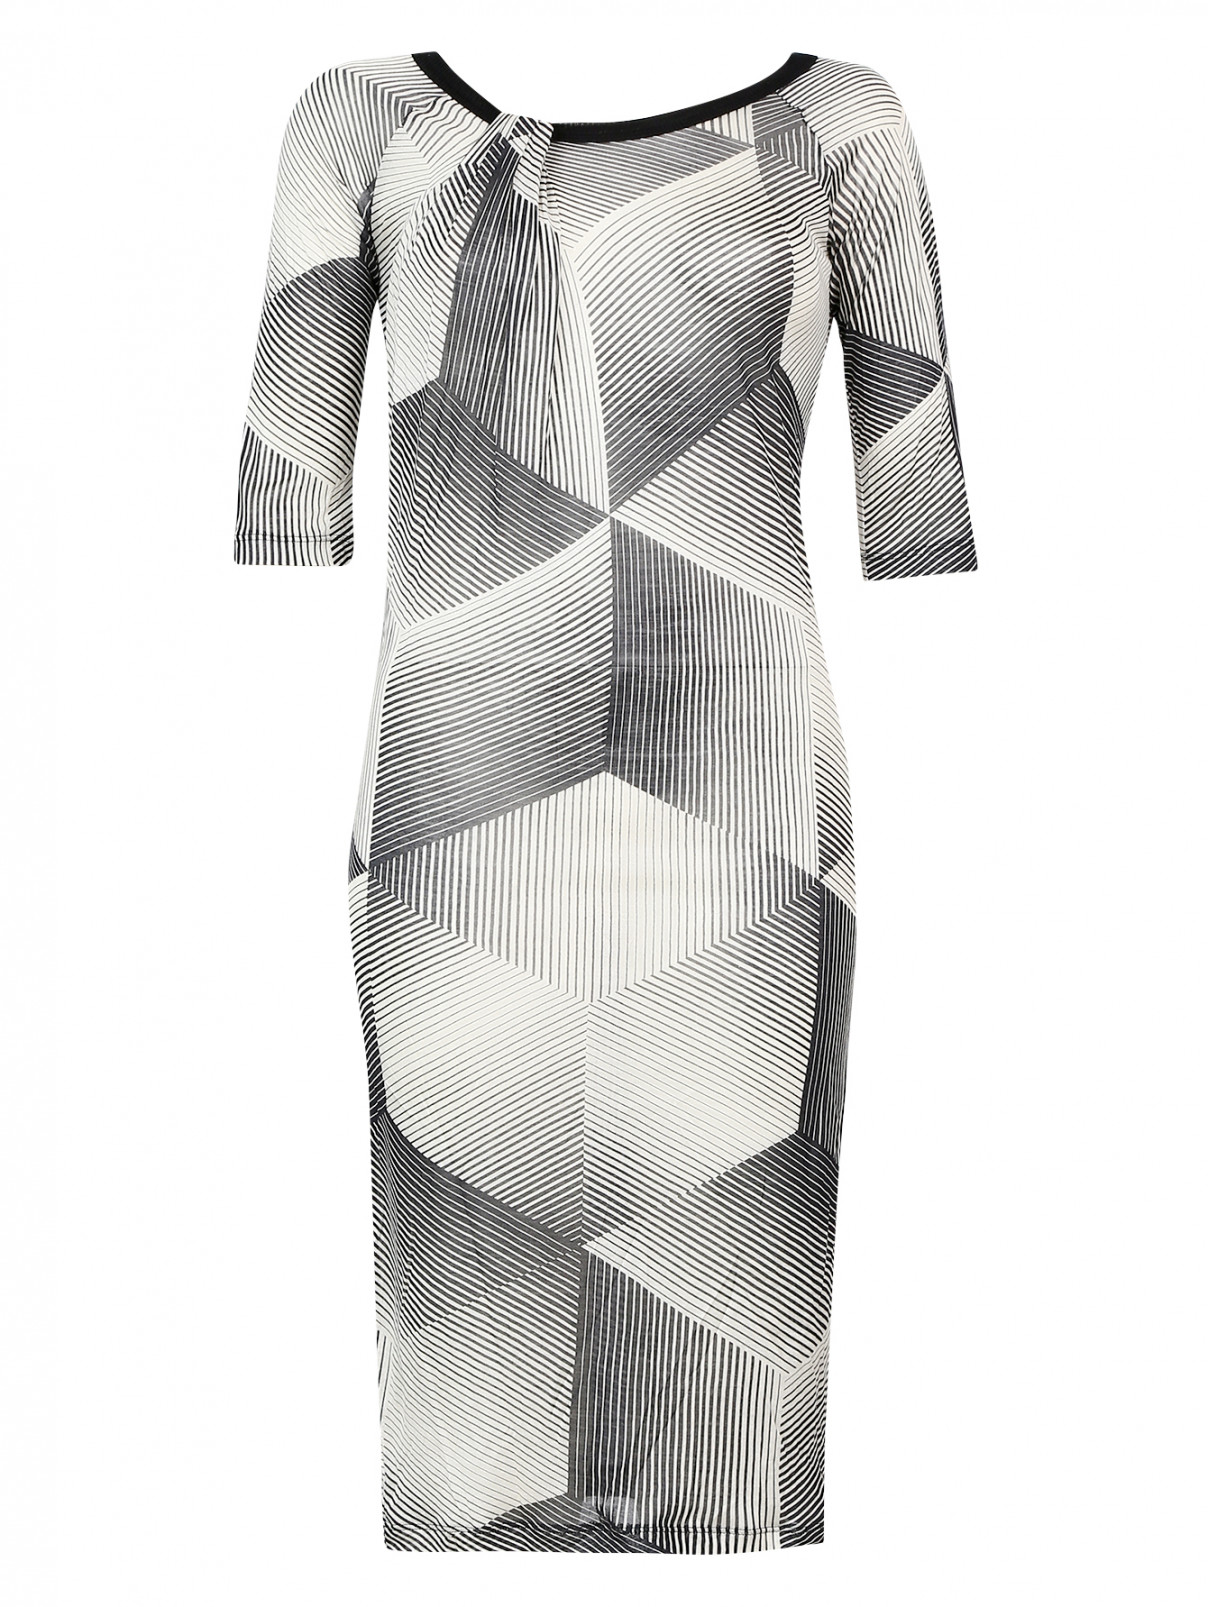 Эластичное шелковое платье с графическим принтом Jean Paul Gaultier  –  Общий вид  – Цвет:  Узор